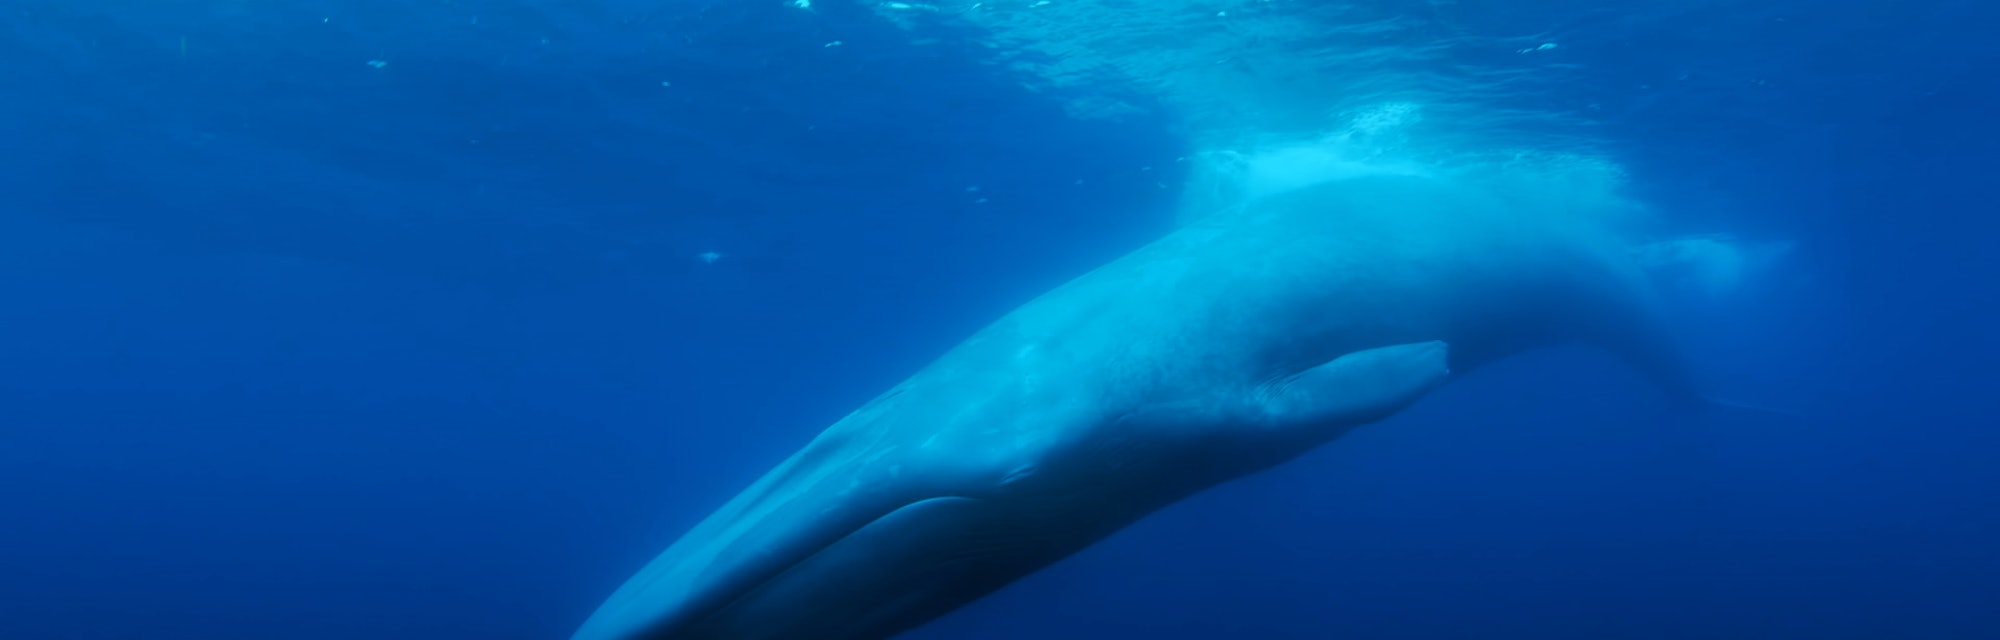 A whale swimming through the ocean